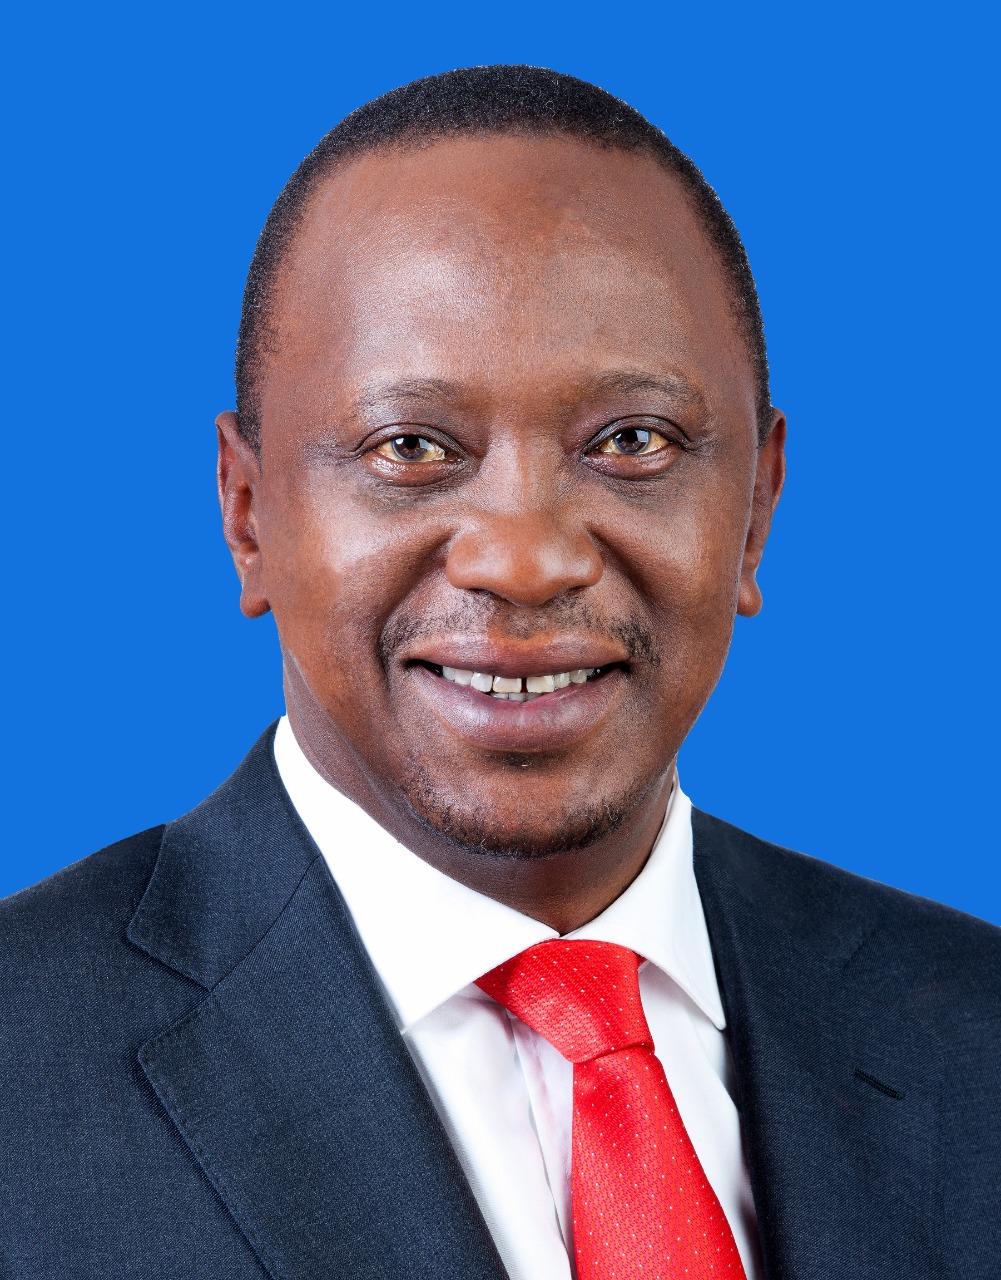 H.E President Uhuru Kenyatta